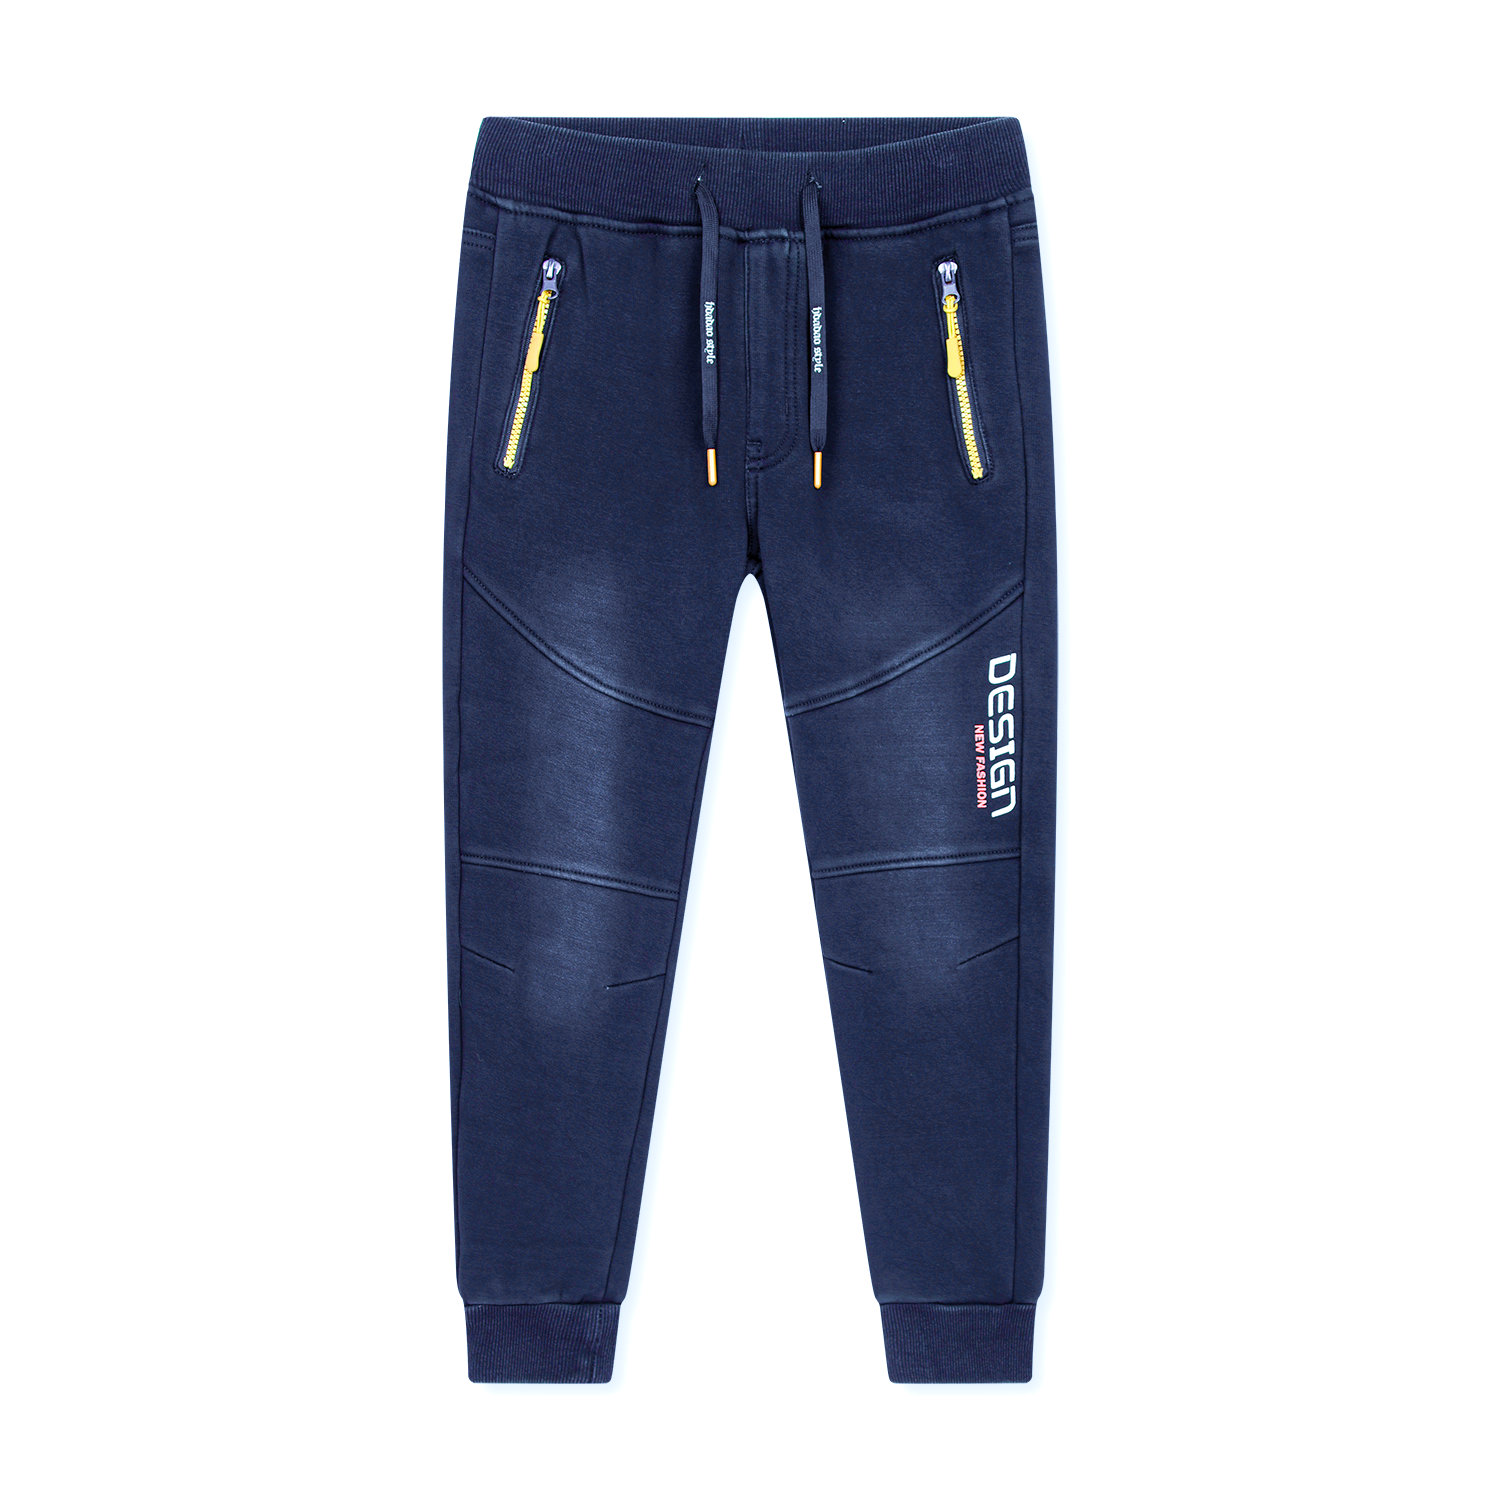 Chlapecké riflové kalhoty/ tepláky, zateplené - KUGO CK0925, modrá Barva: Modrá, Velikost: 164